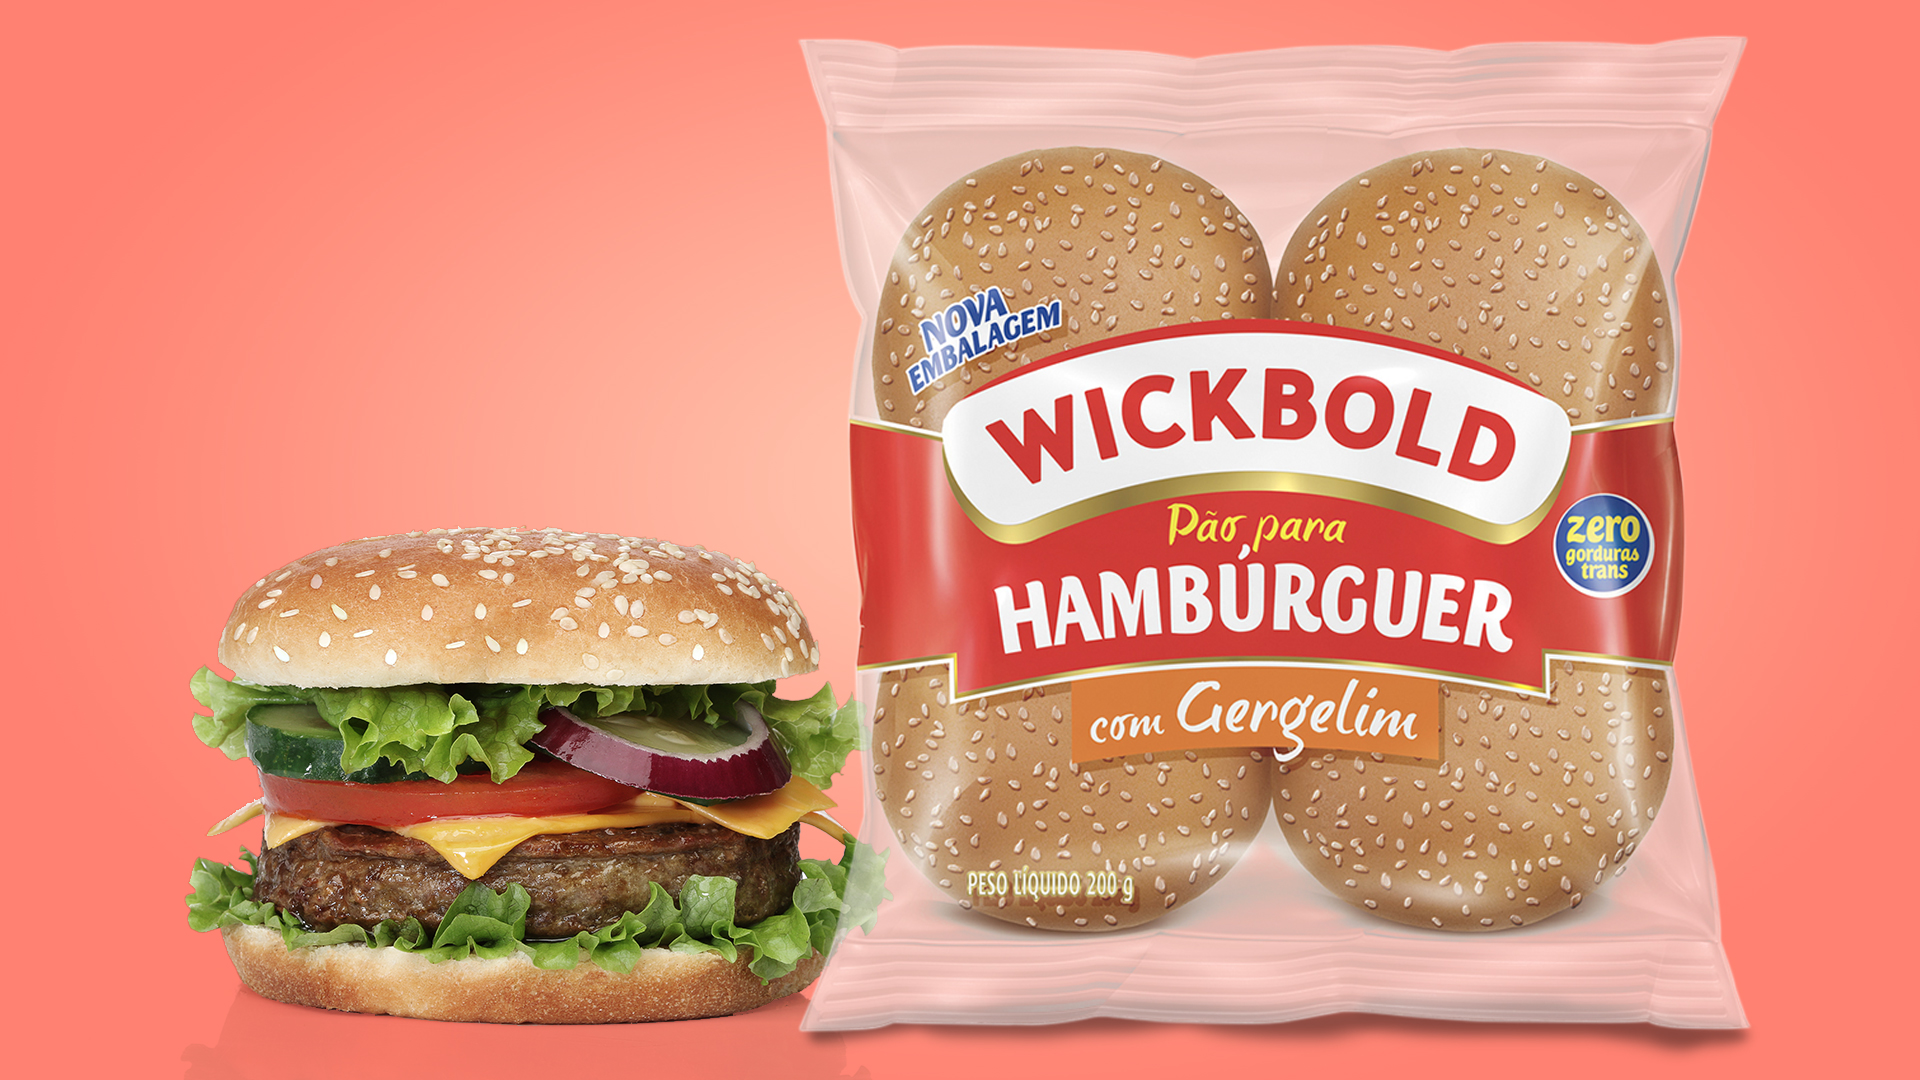 Wickbold Pão de Hamburguer ao lado de um hamburguer